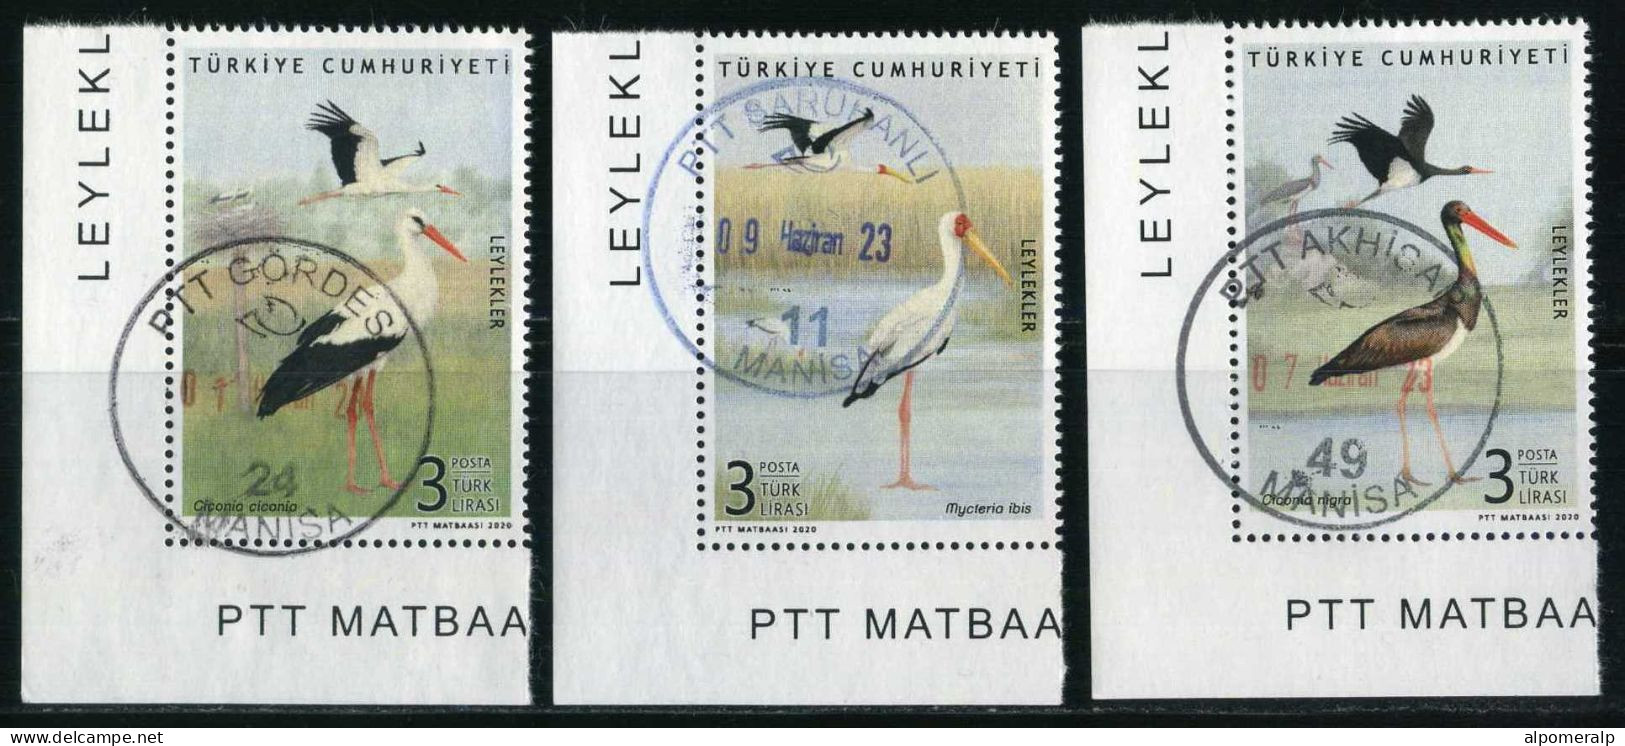 Türkiye 2020 Mi 4597-4599 Storks: White Stork, Yellow-Billed Stork, Black Stork, Birds, Animals (Fauna) - Gebraucht